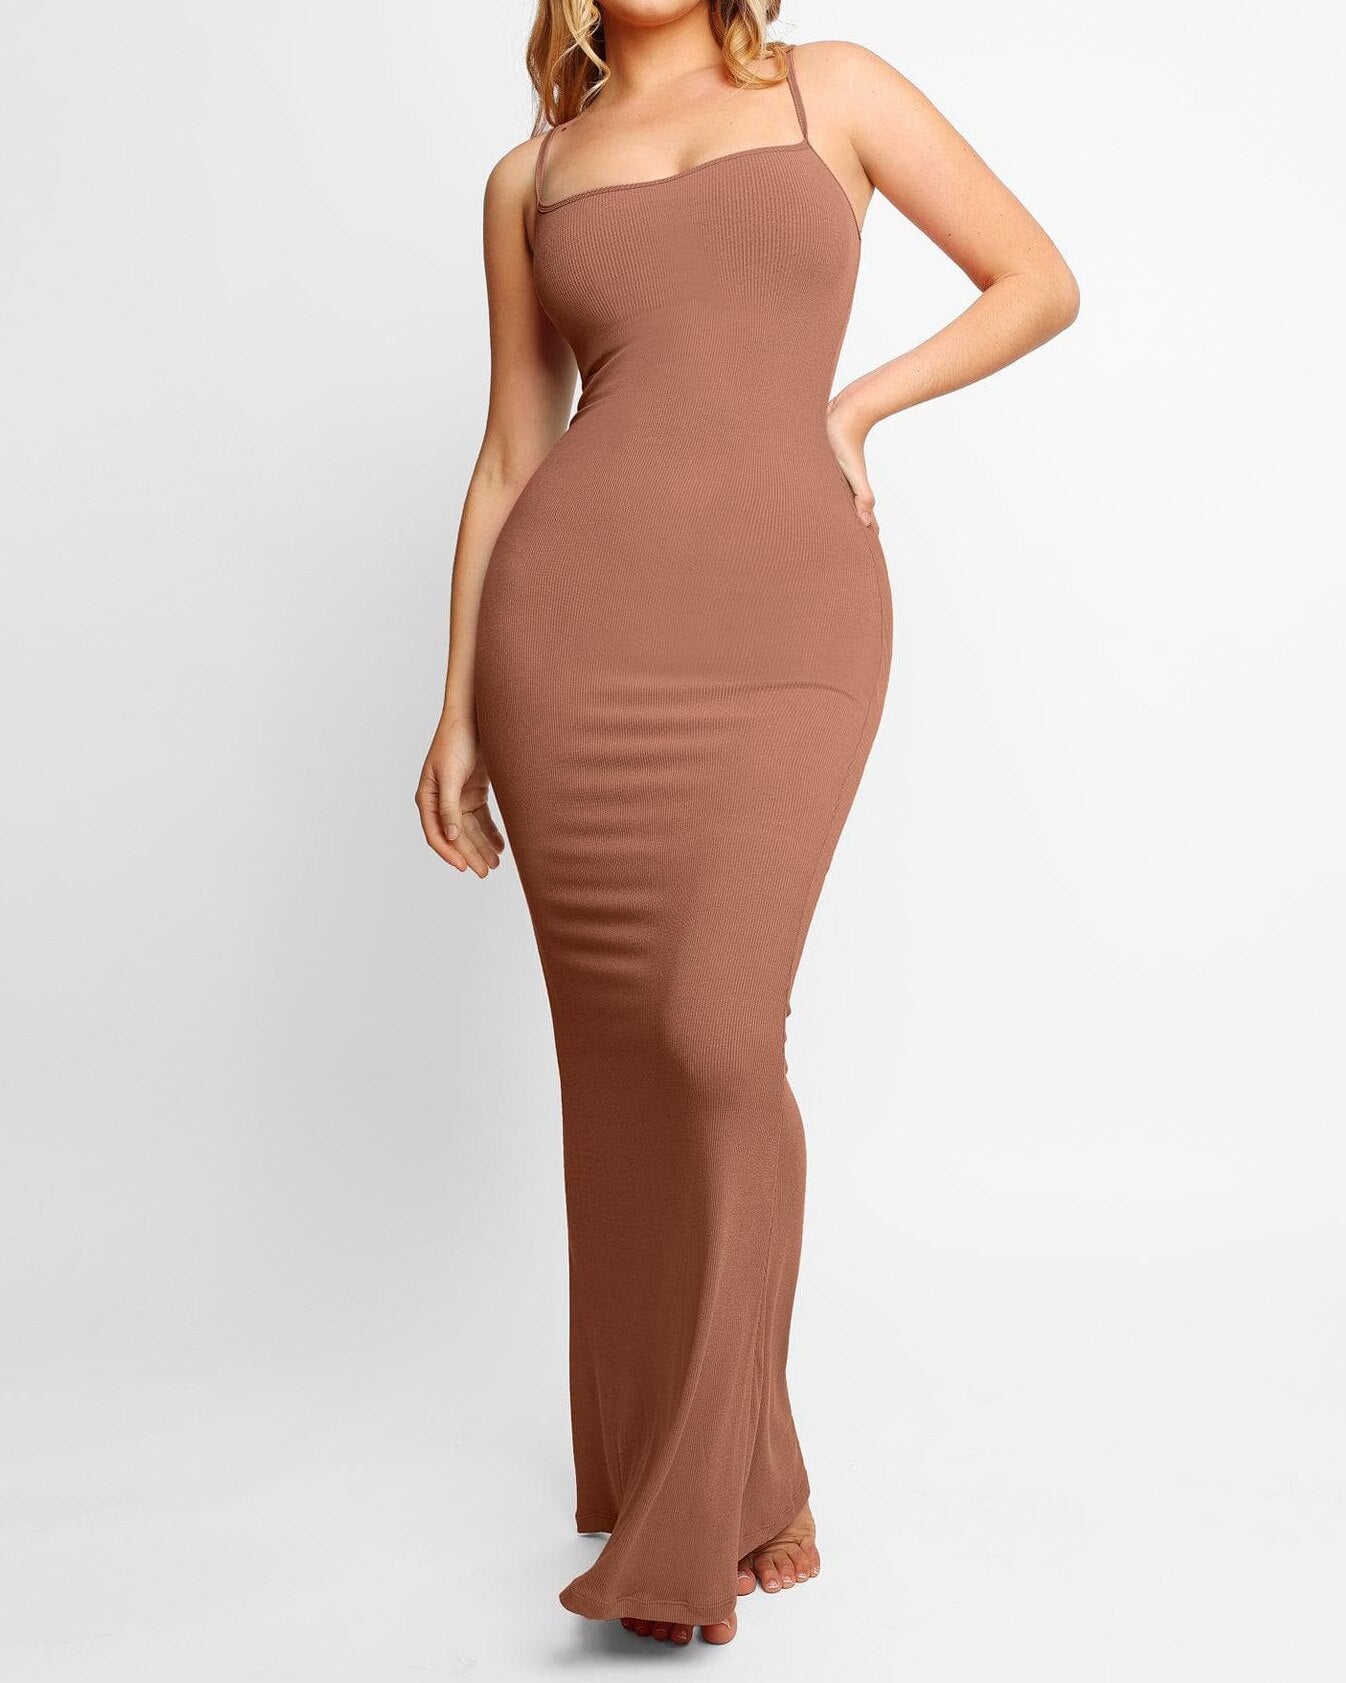 SkinnyDress™ - Kleid mit integrierter Figurformung